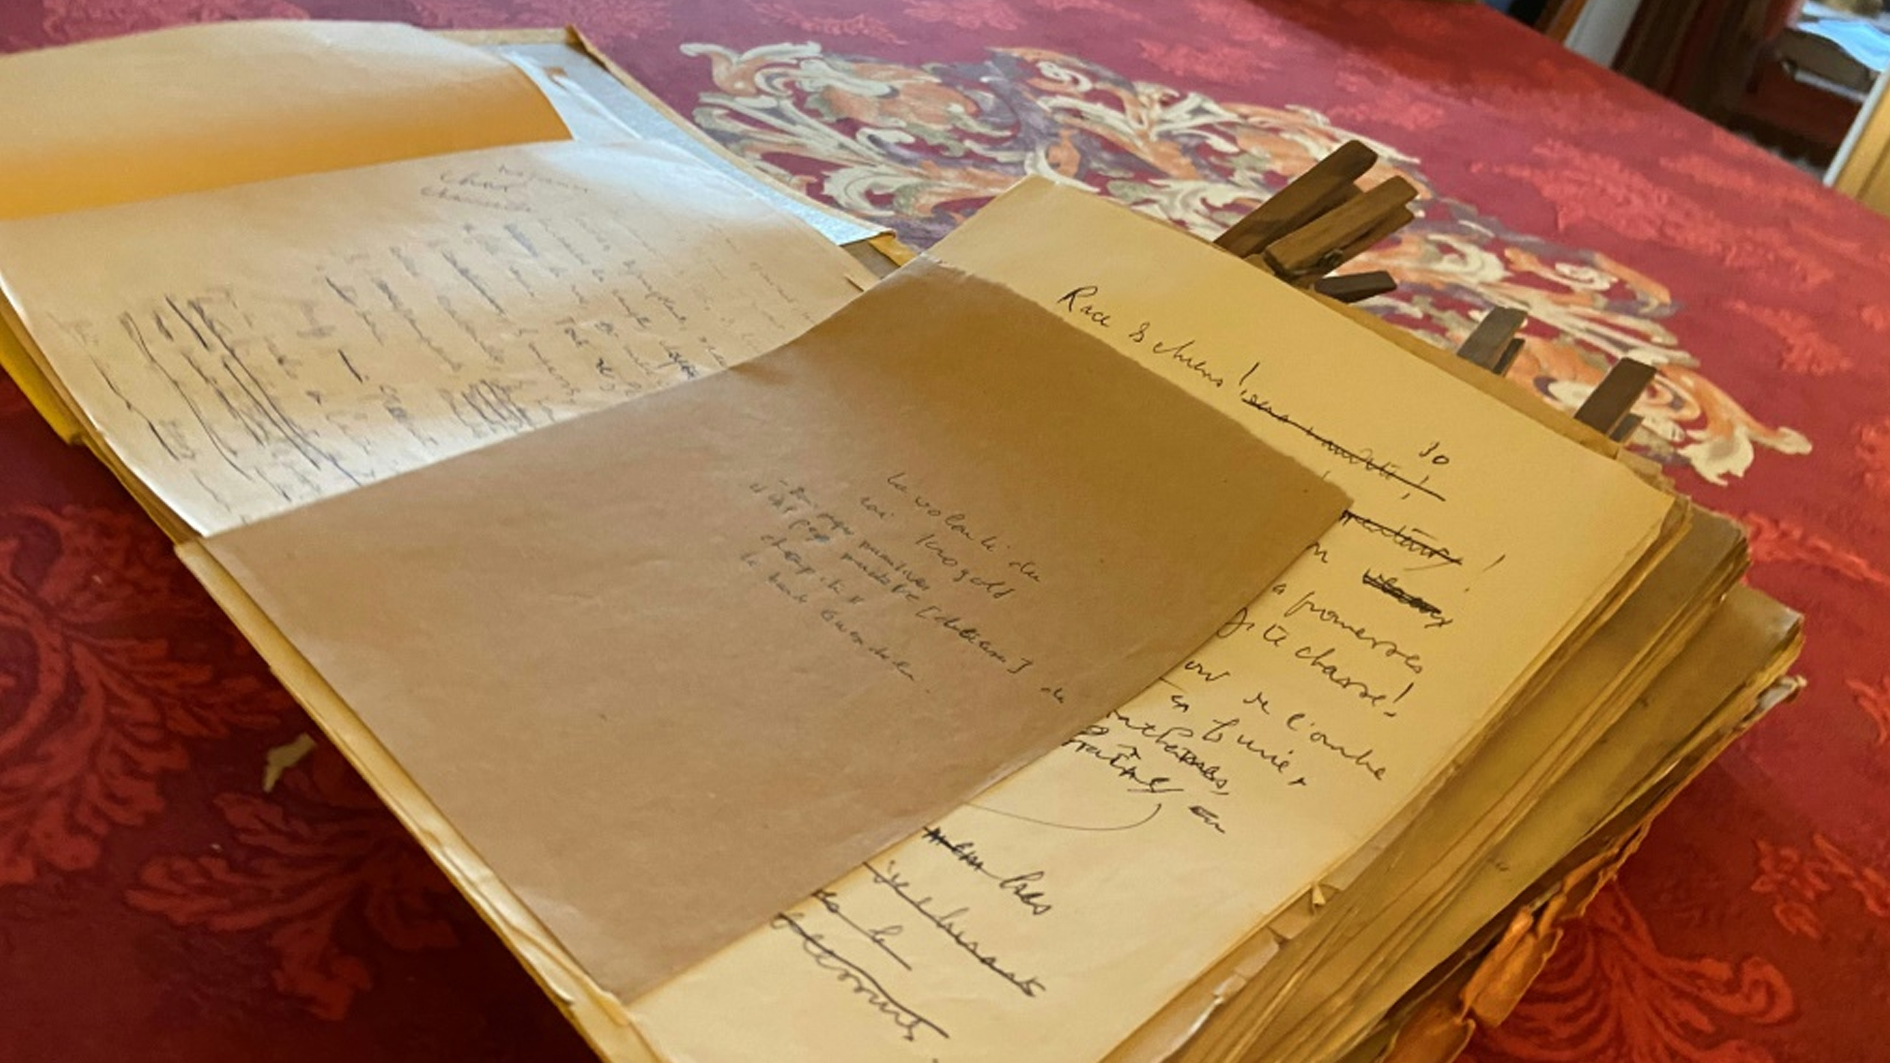 صورة التقطت في 10 آب/أغسطس 2021 لمخطوطات للكاتب الفرنسي لوي فردينان سيلين تتضمن نحو ستة آلاف ورقة غير منشورةاستردها ورثة الكاتب بعدما كانت مفقودة لعشرات السنوات (ا ف ب)